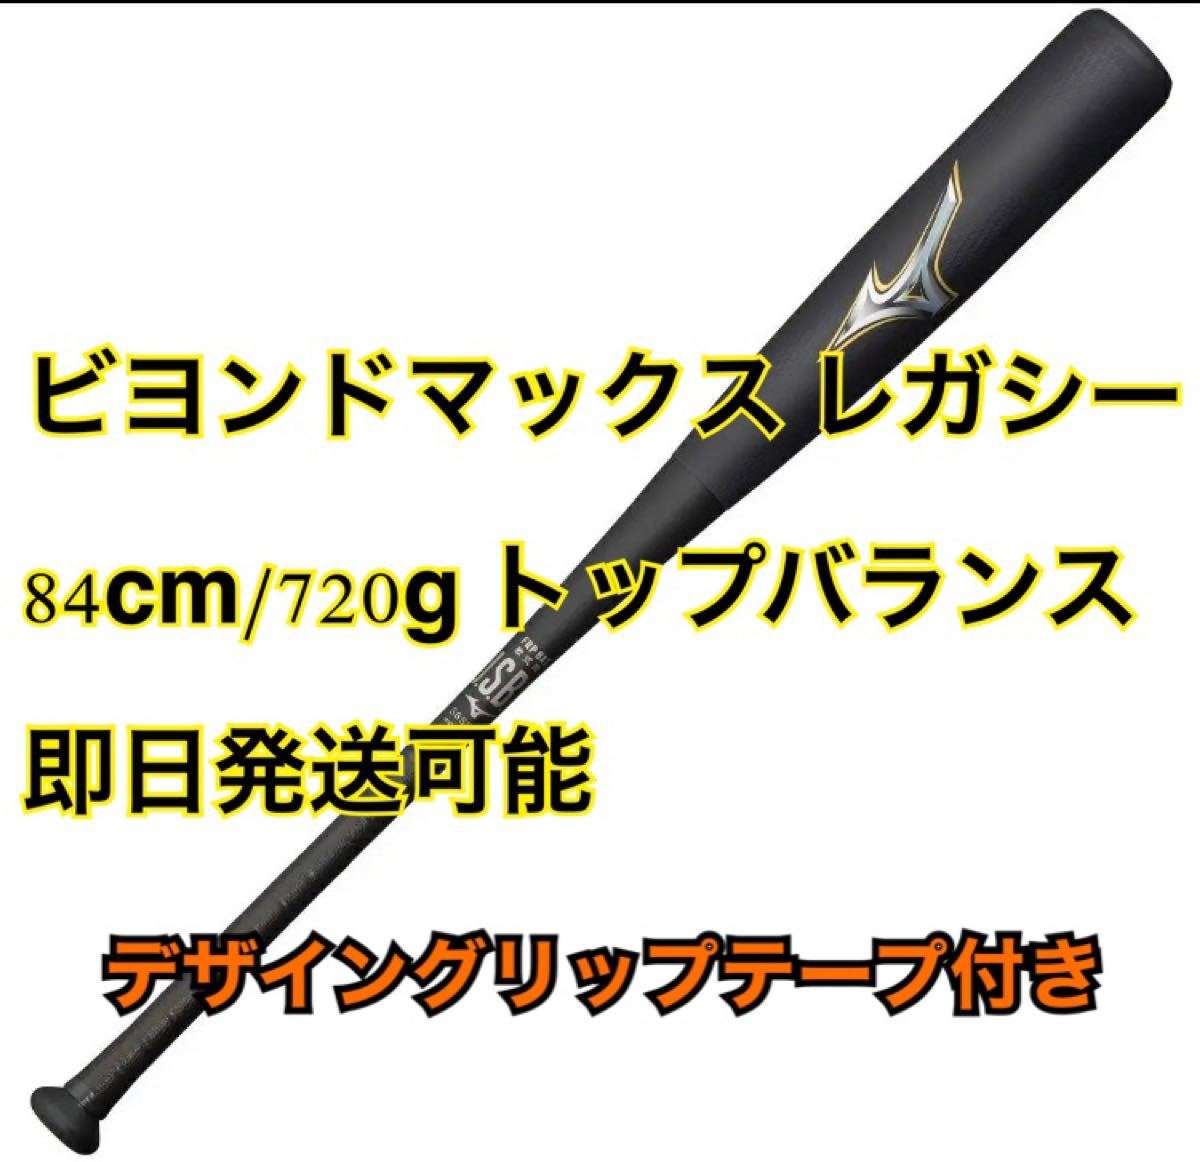 日本製 MIZUNO 84cm トップバランス 新製品の通販 by やまぐち号's